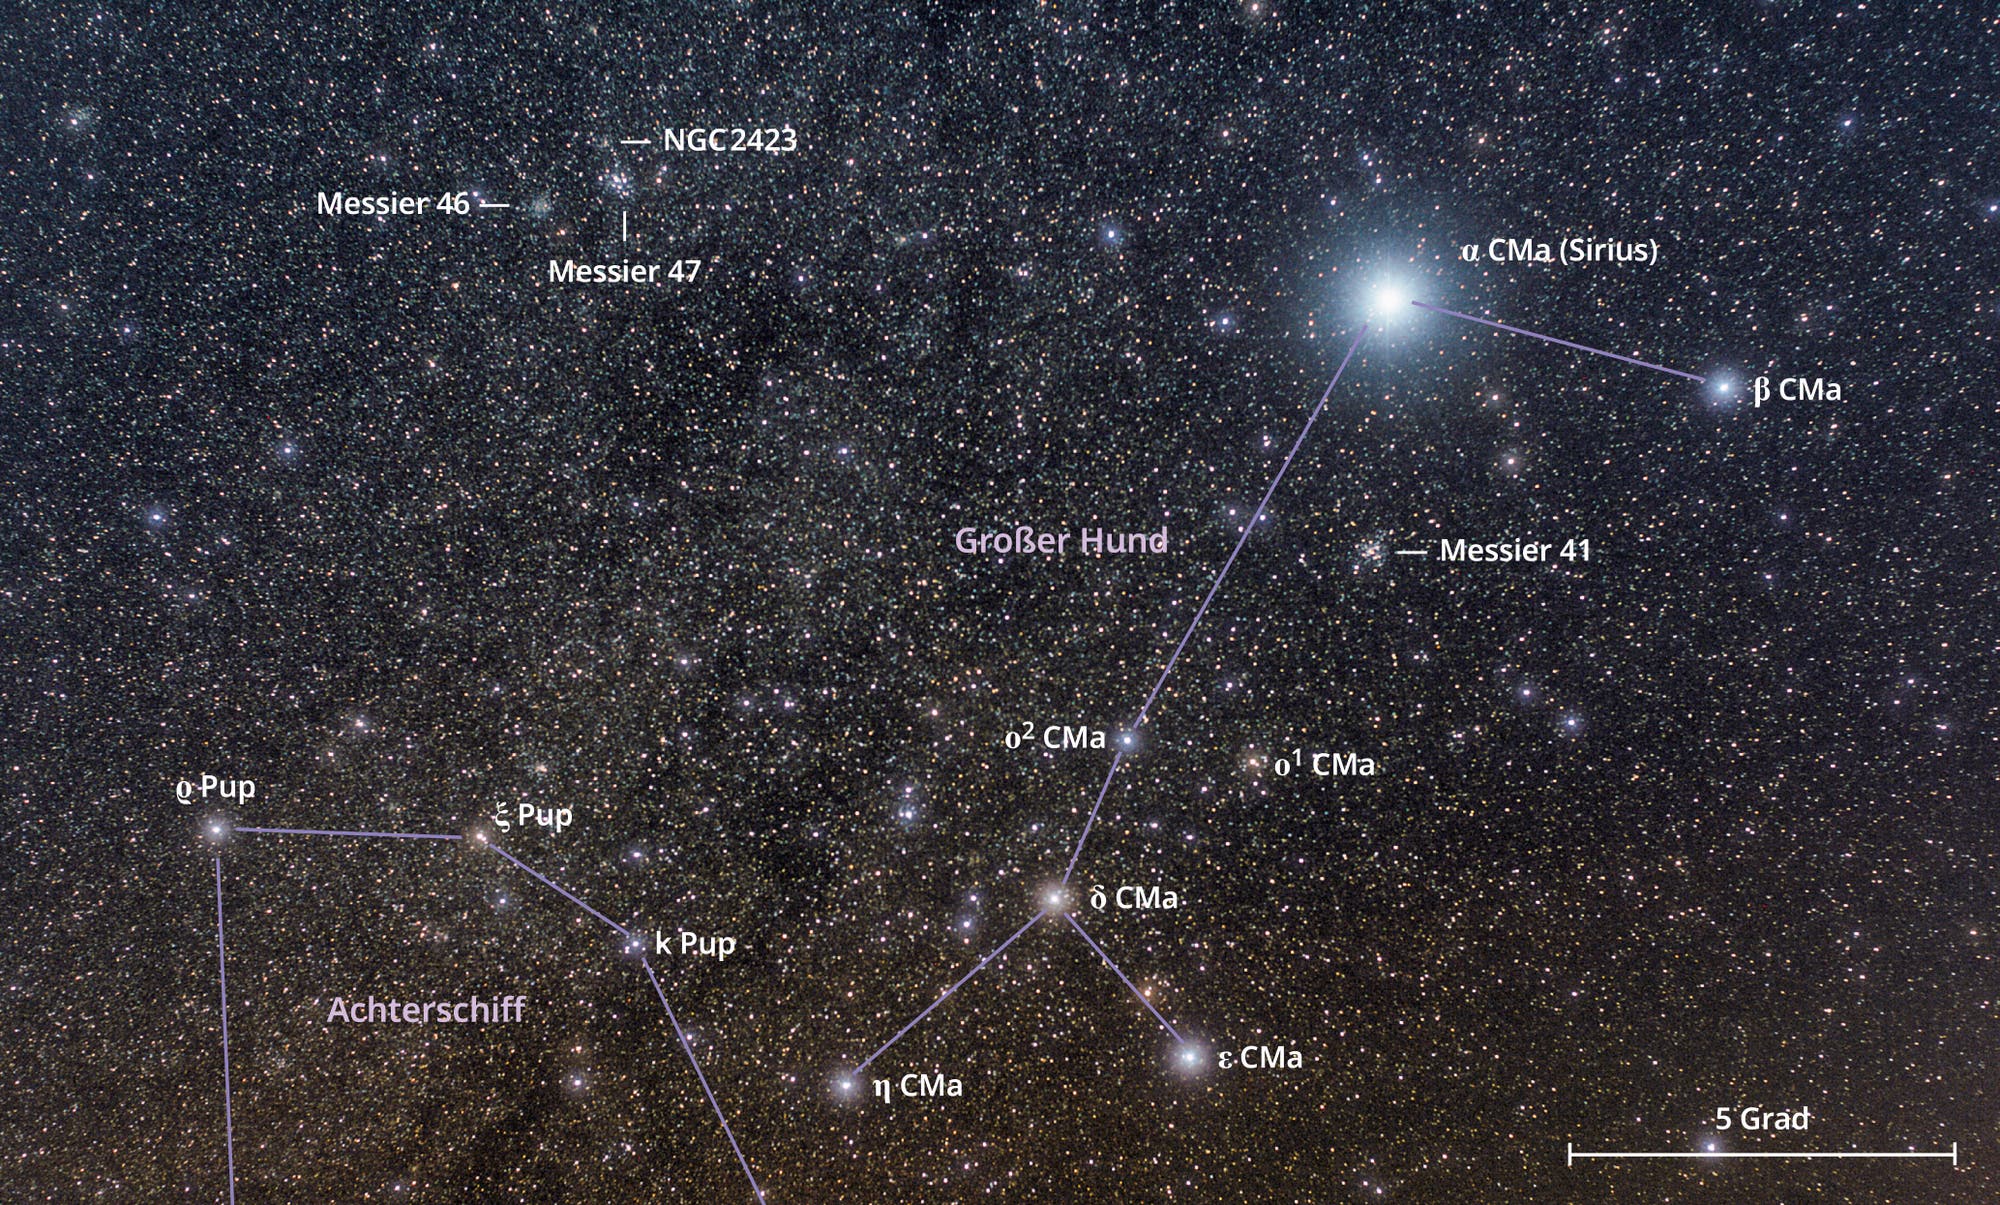 Links im Bild, neben dem Sternbild Großer Hund, befindet sich das Sternbild Achterschiff mit den Sternhaufen Messier 46 und 47